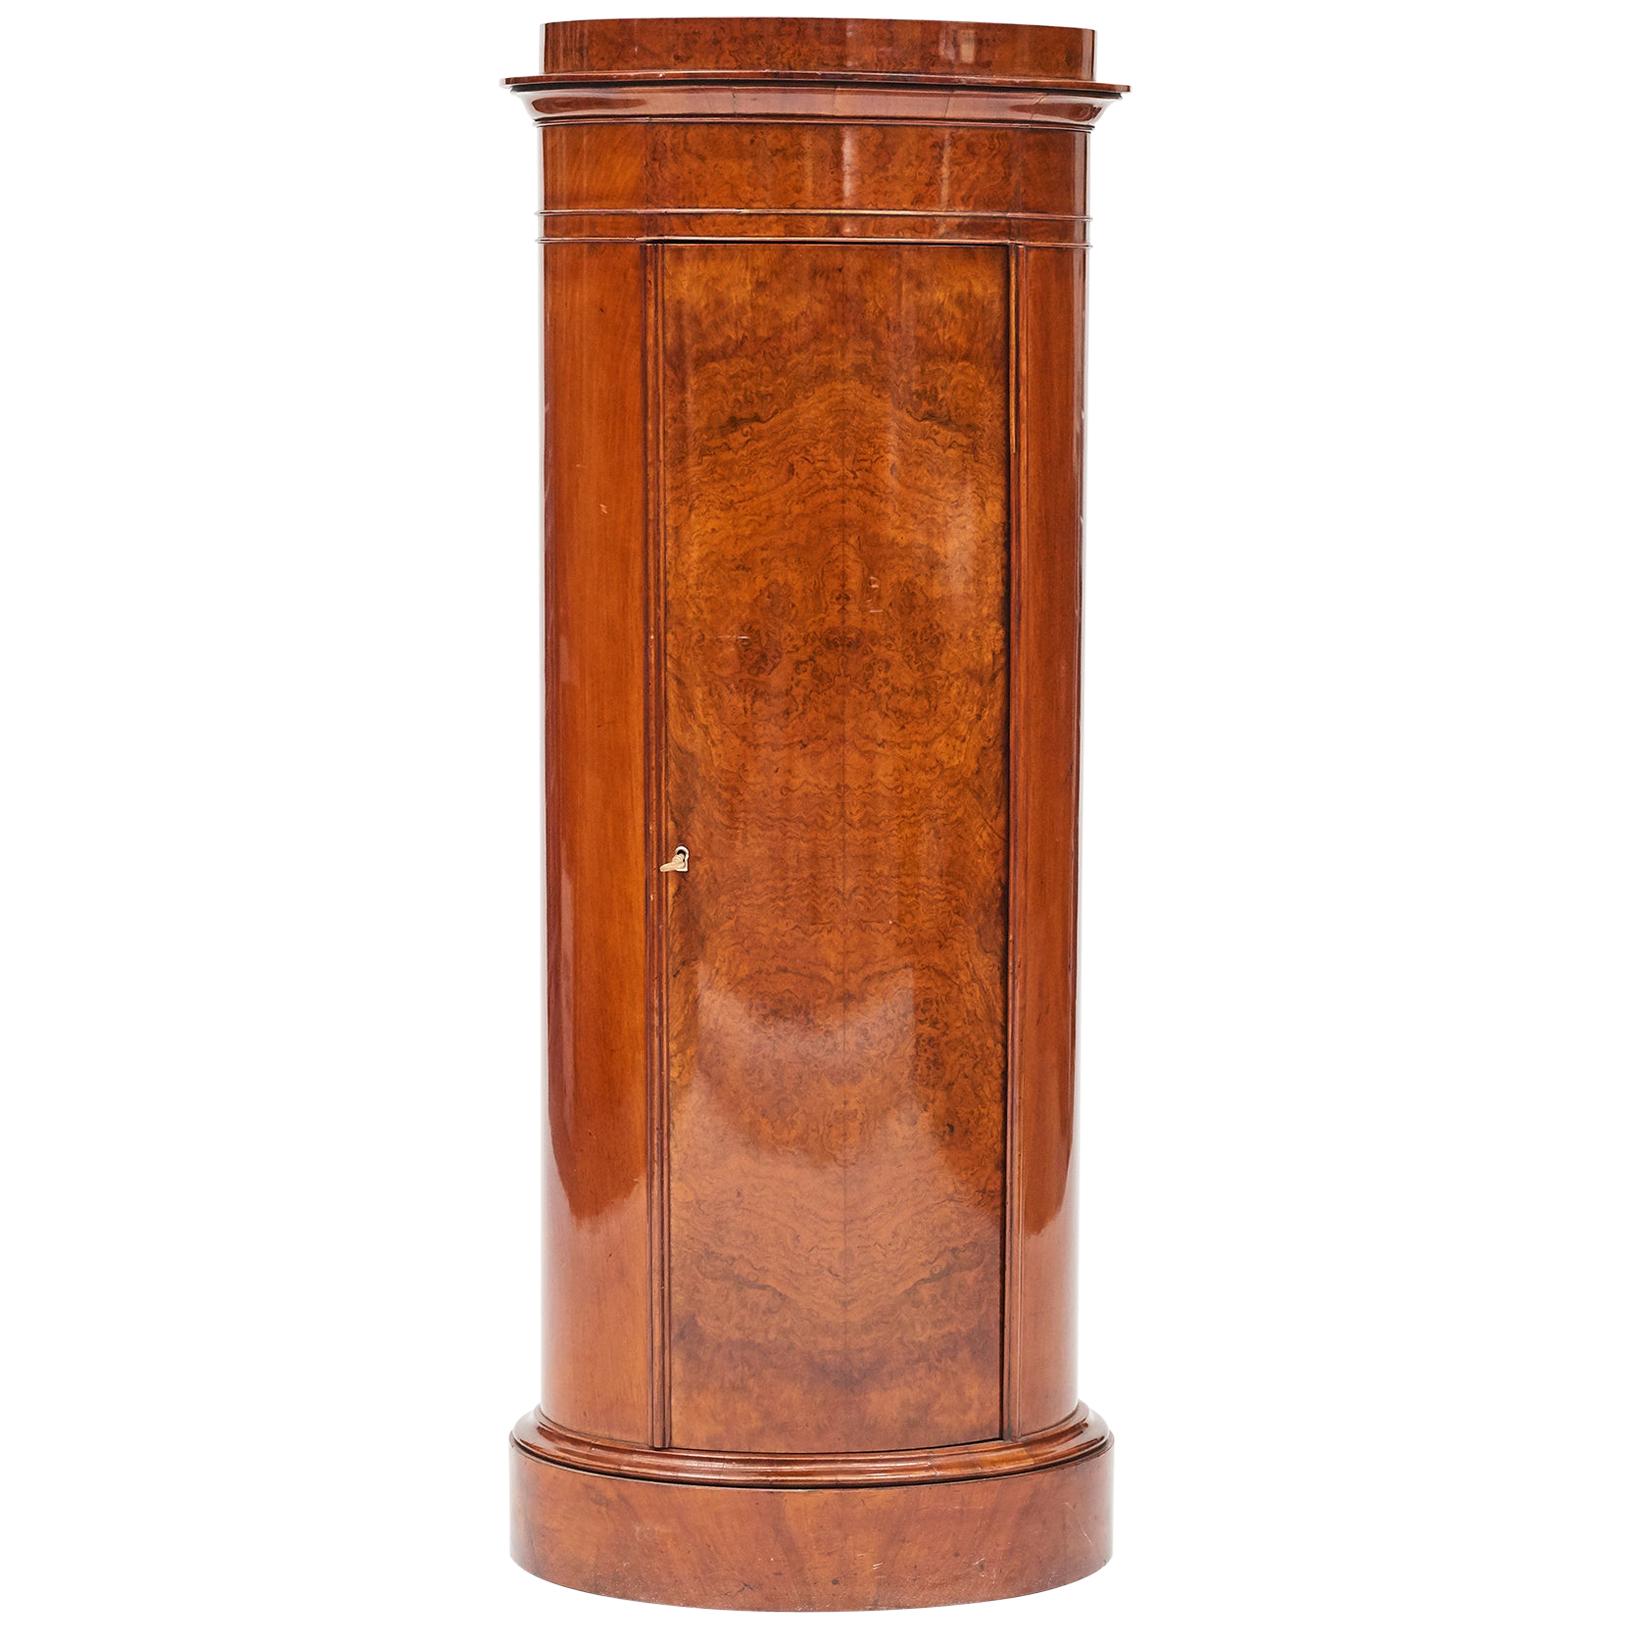 Cylinder Burl Walnut Pedestal Cabinet, Copenhagen, 1830-1840